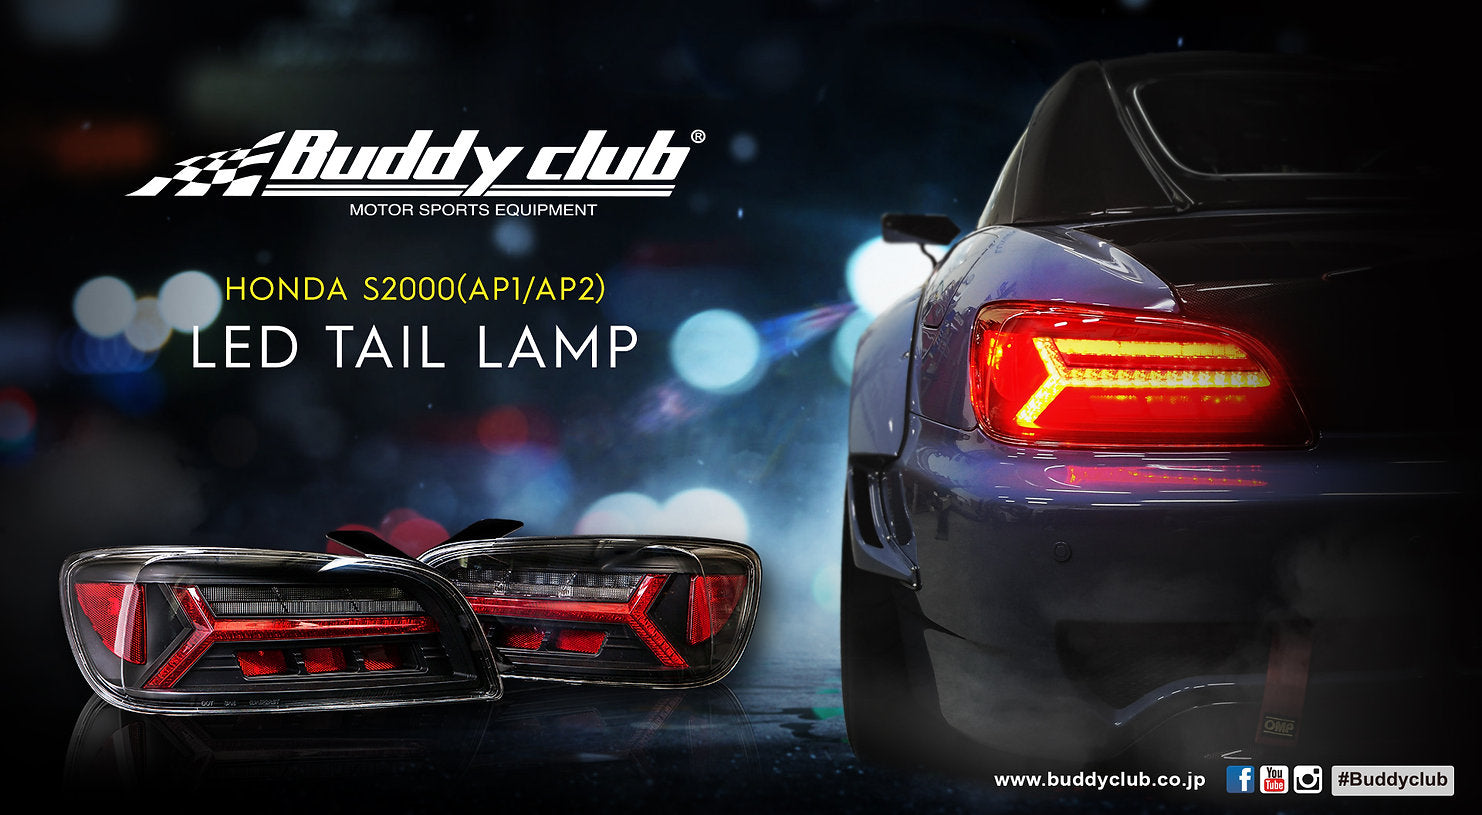 BUDDY CLUB LED TAIL LAMP KIT FOR HONDA S2000 AP2 BUDDYCLUB-00004